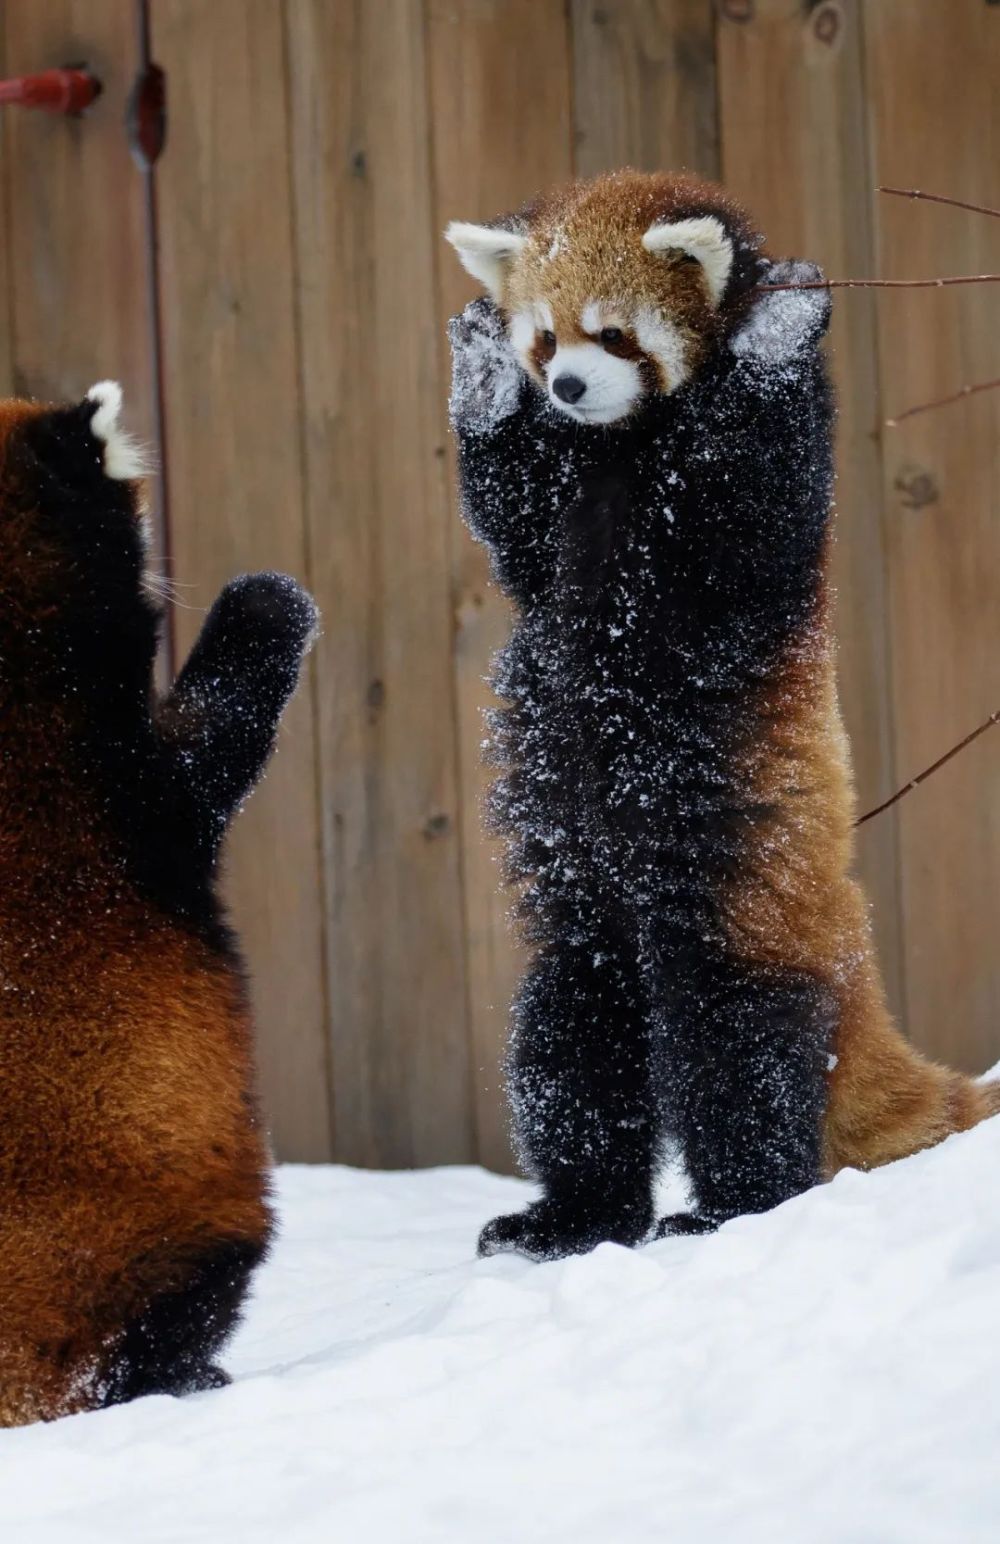 小熊猫站起来可以显得更高大,从而威慑对方,图片来源@视觉中国)但会